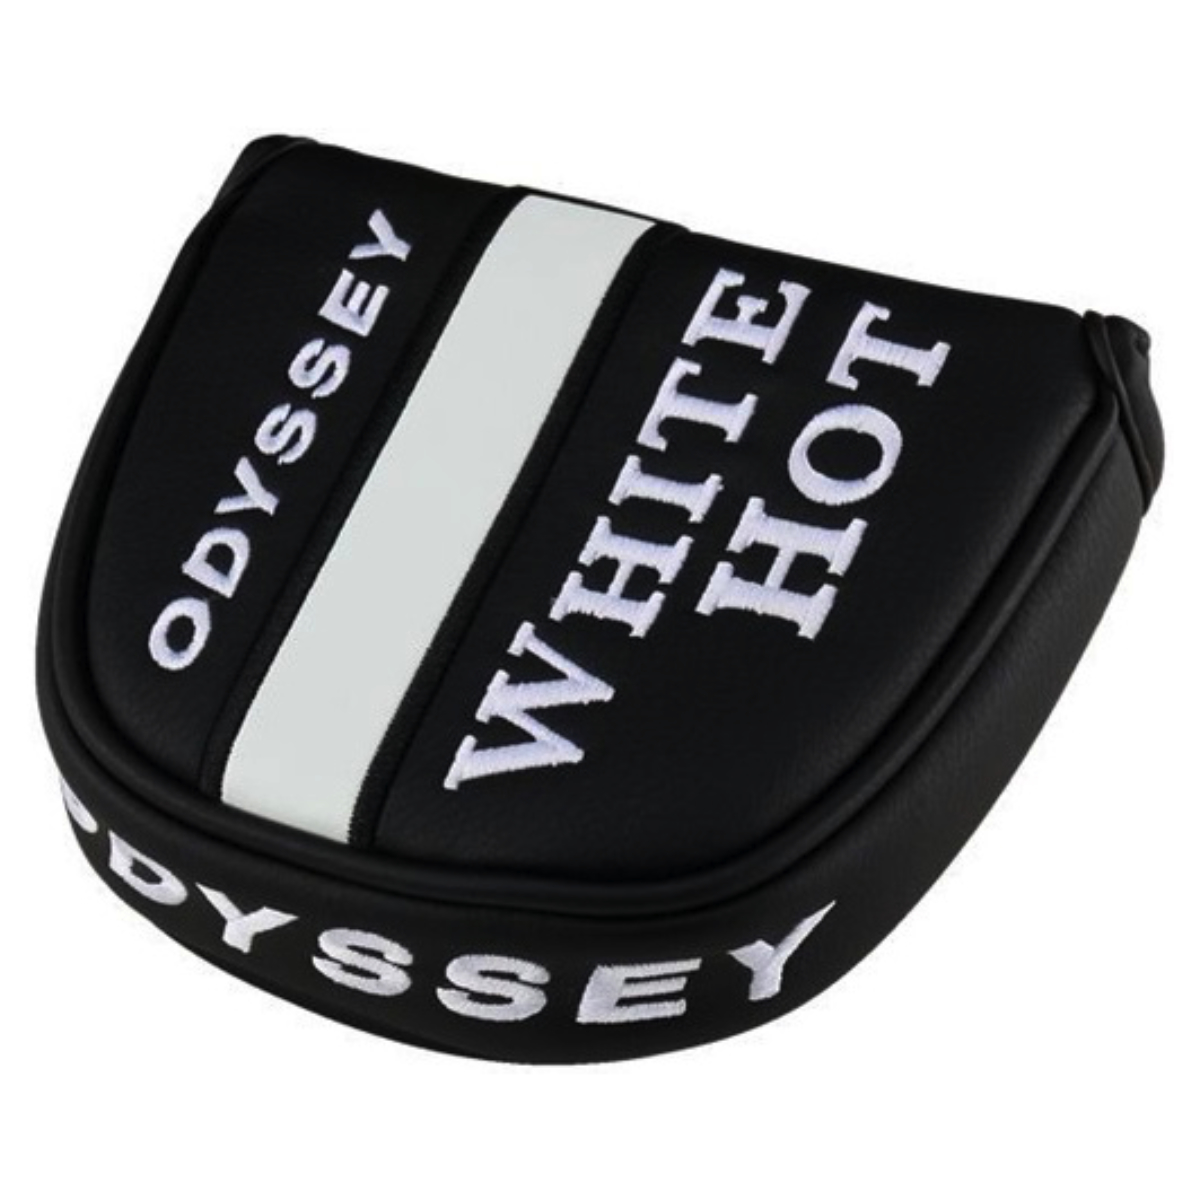 Odyssey White Hot Versa Twelve S Putter